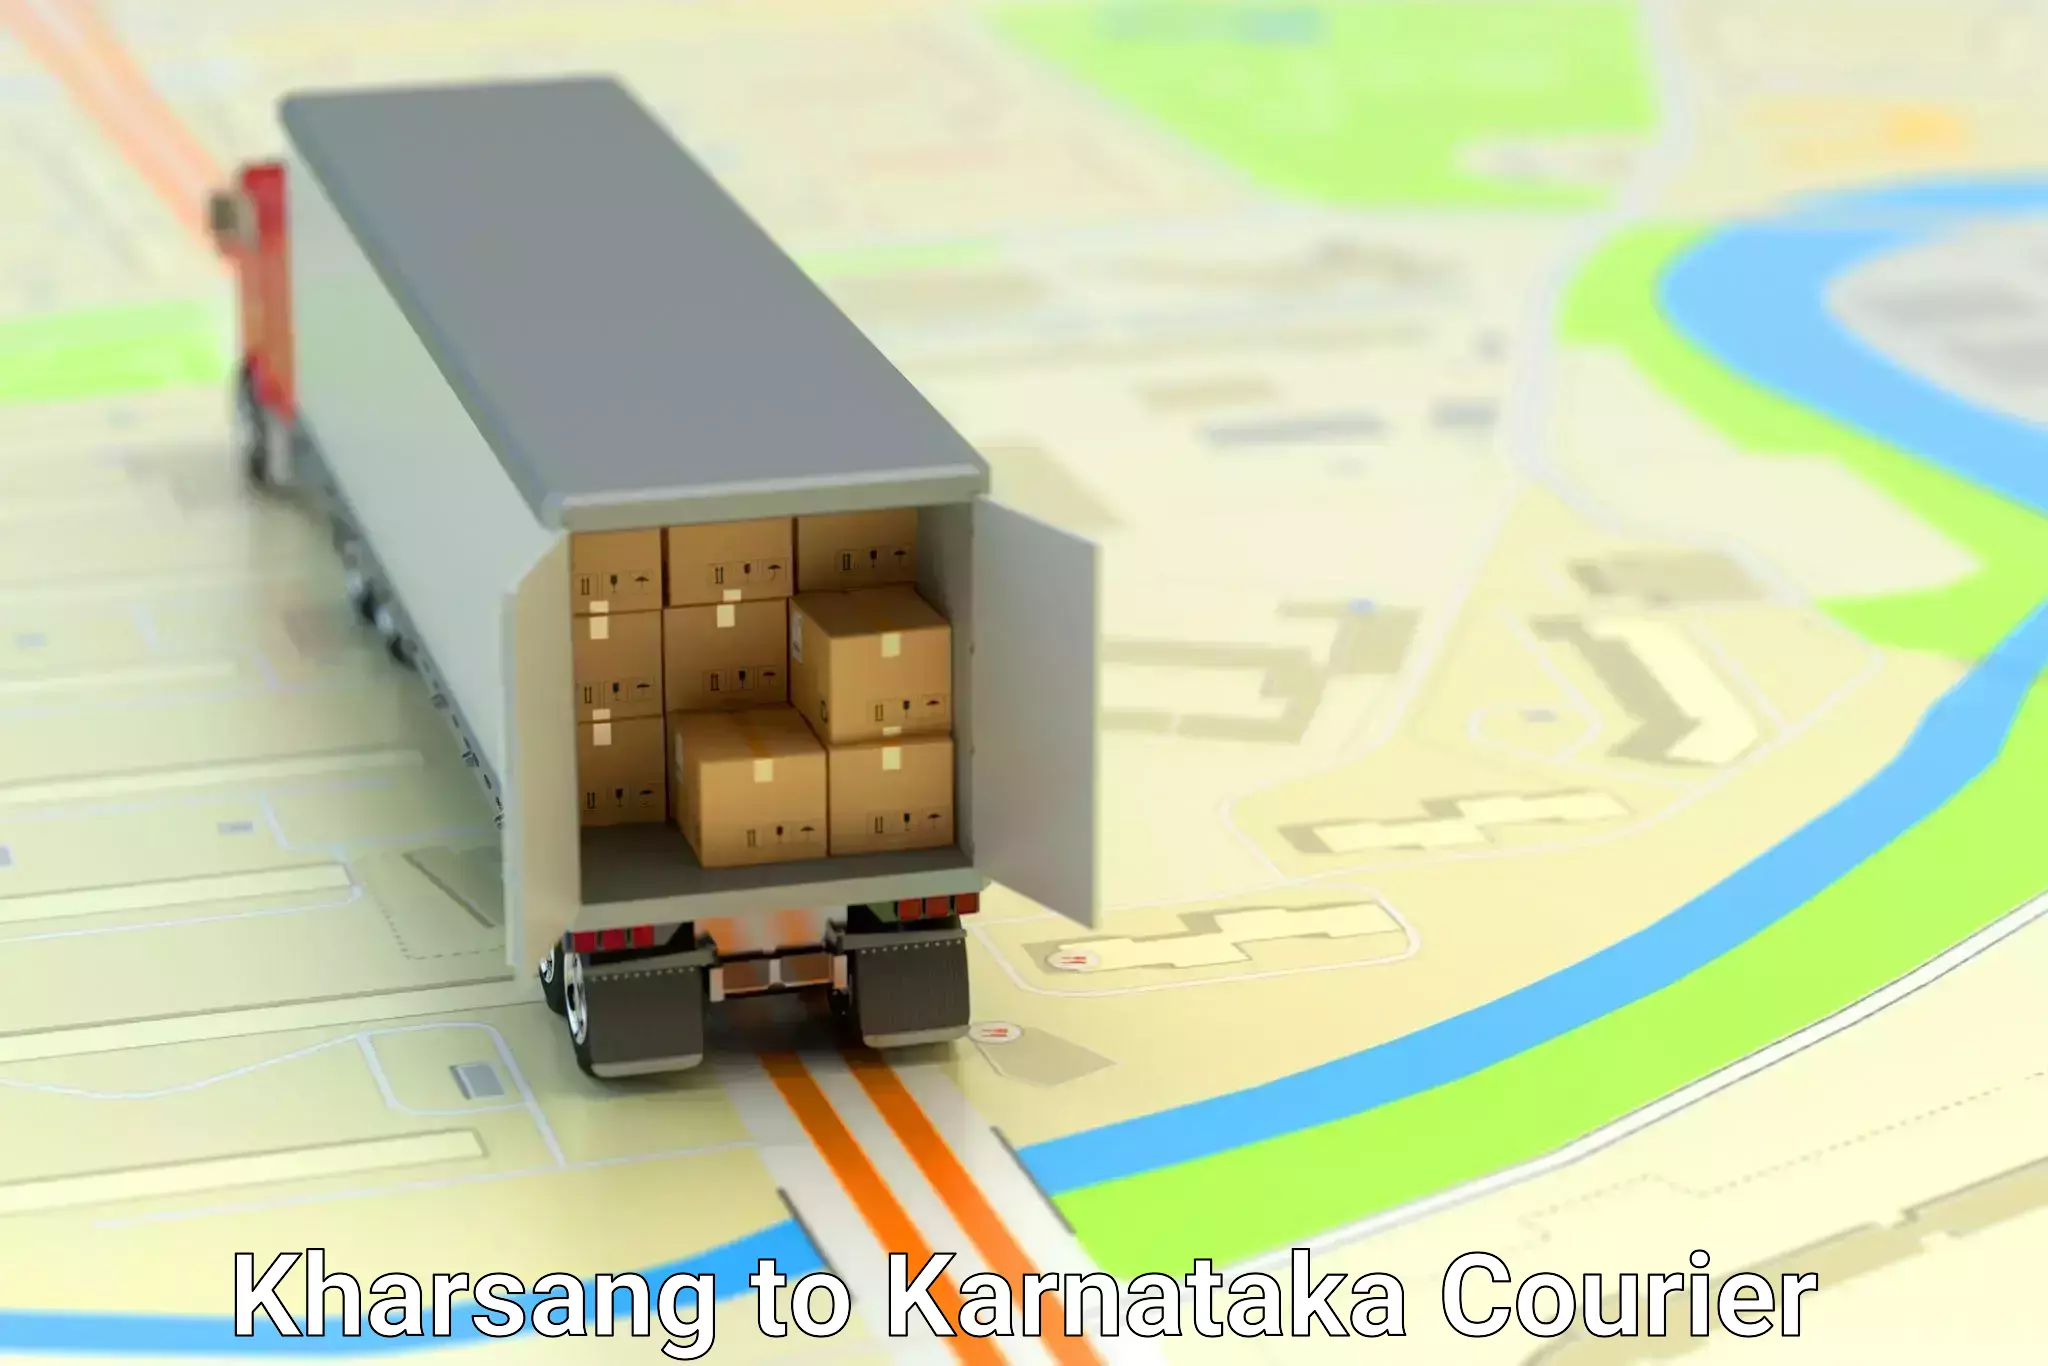 Express courier facilities in Kharsang to Karnataka